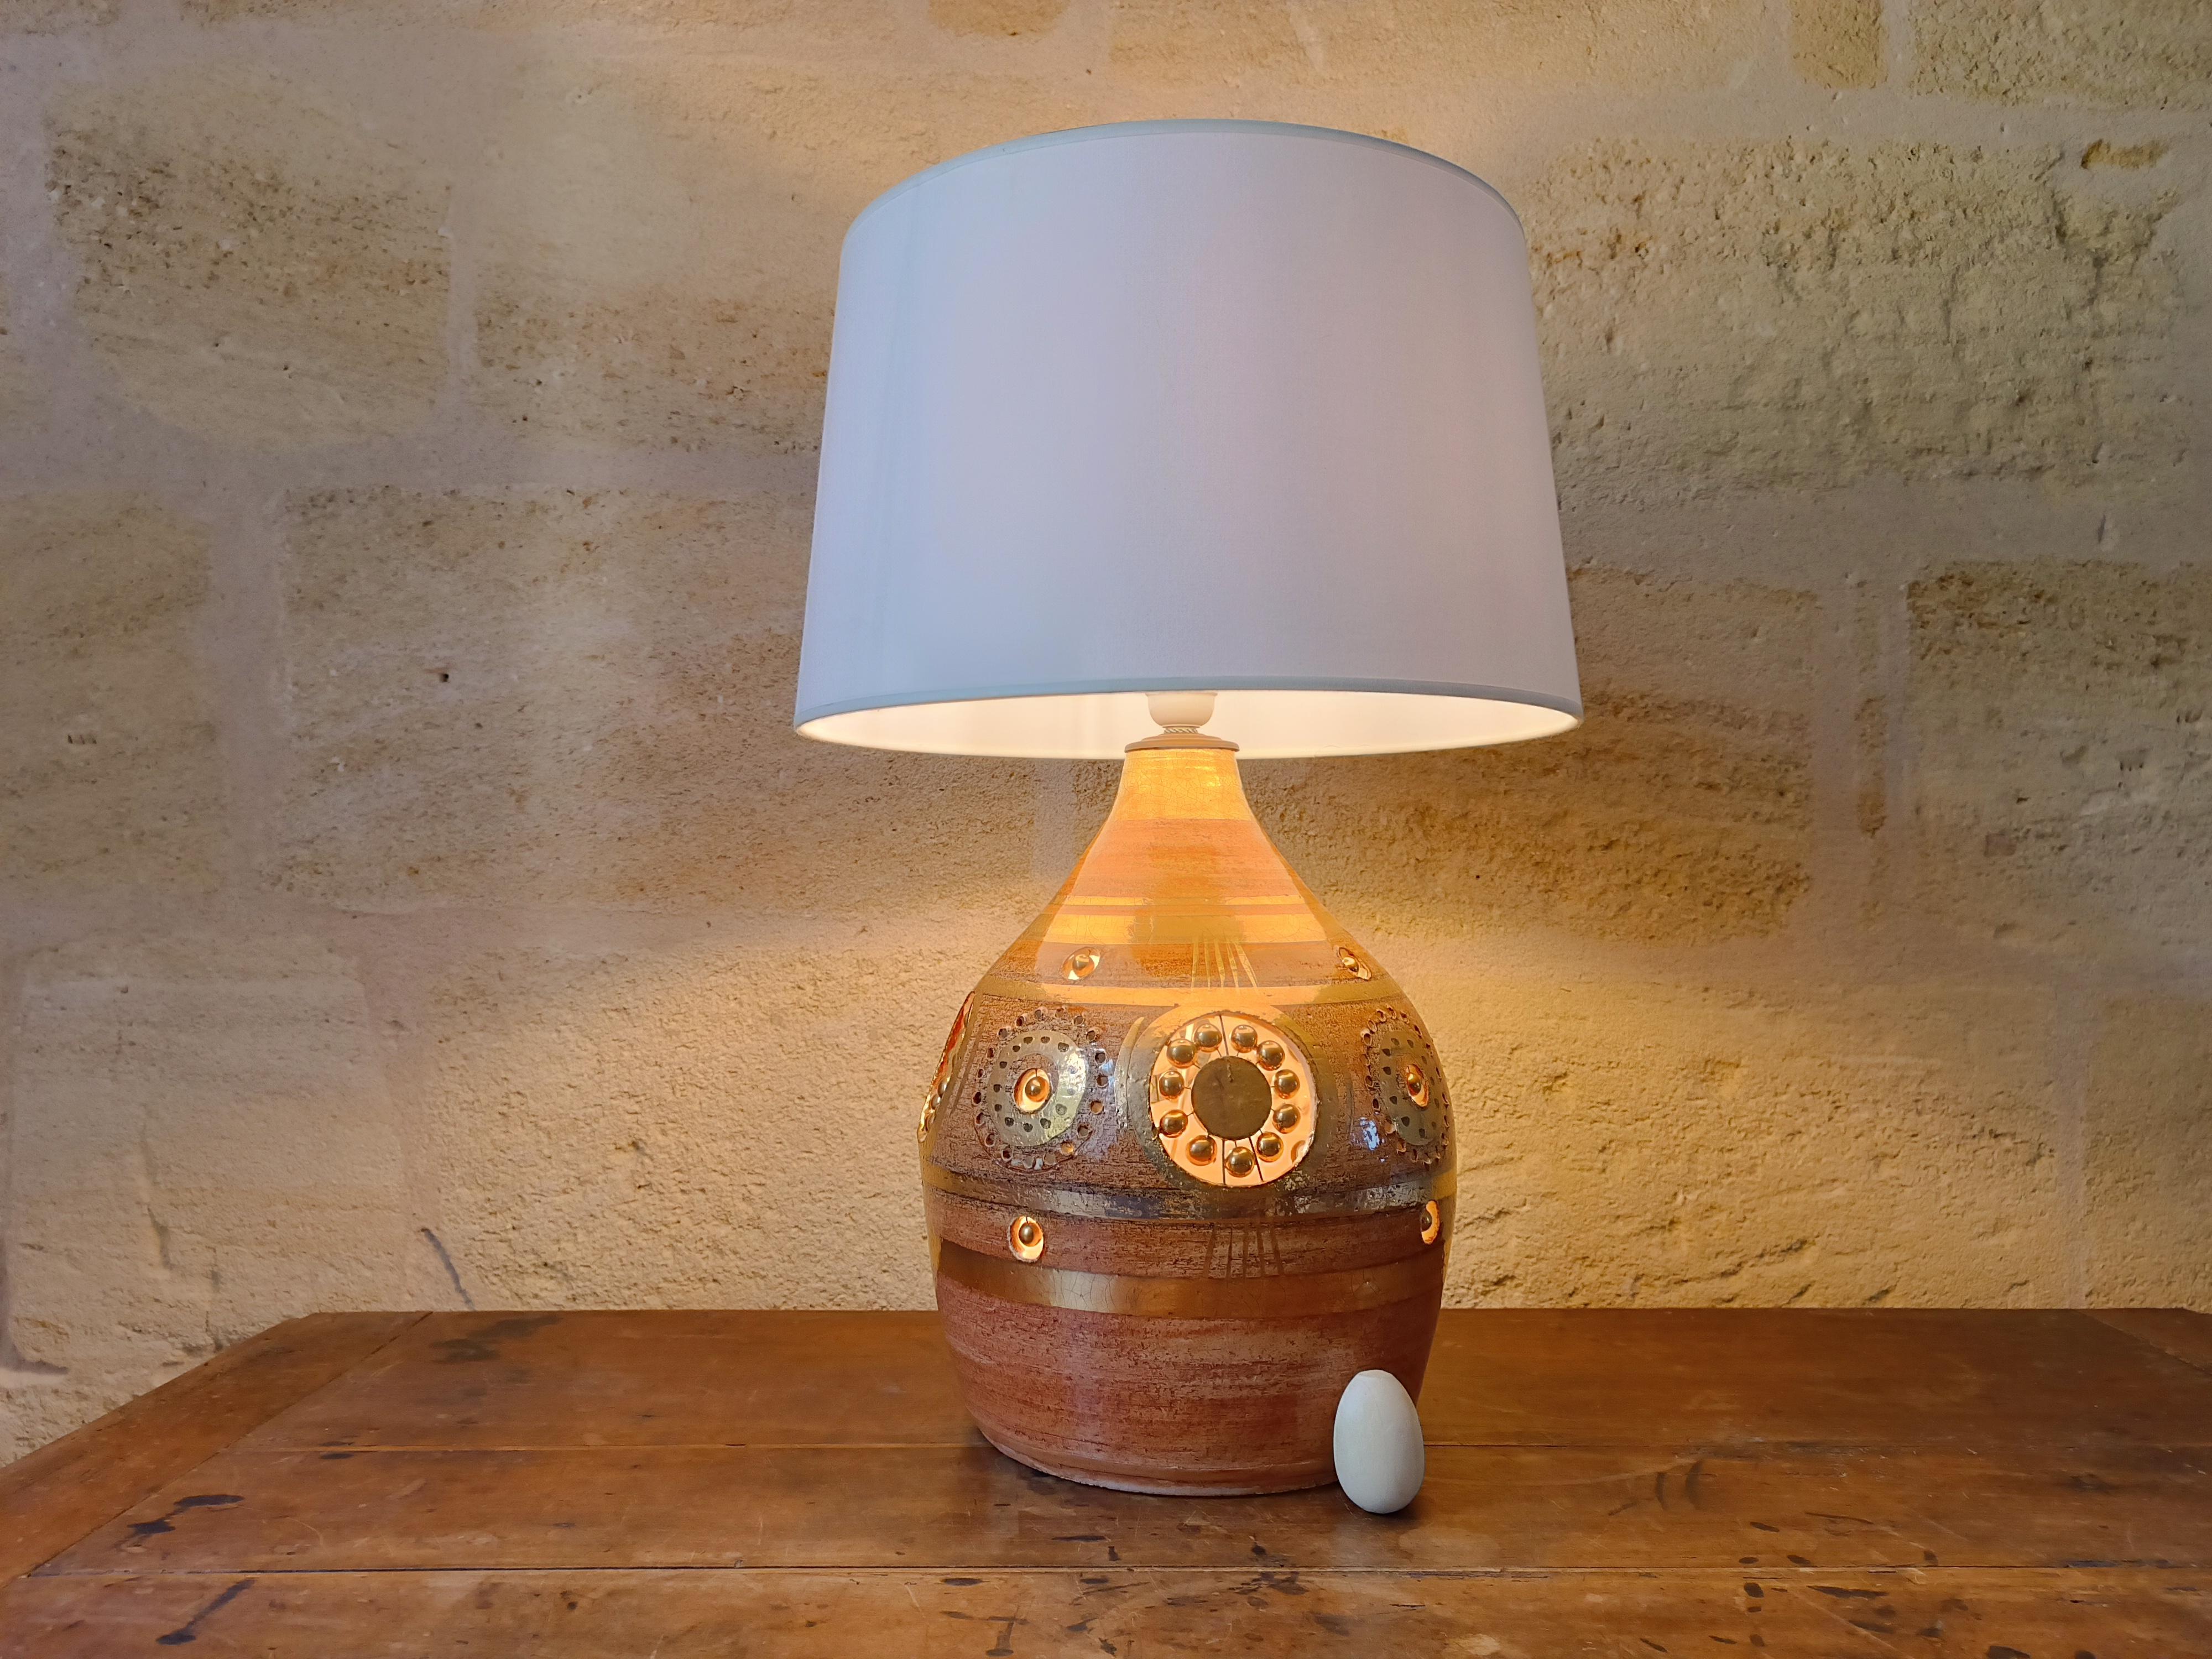 Lampe de table en céramique française de Georges Pelletier, 1970

C'est une belle lampe en céramique. Elle offre un double éclairage puisqu'une deuxième ampoule se trouve à l'intérieur de la base de la lampe. La lumière est très douce et permet de